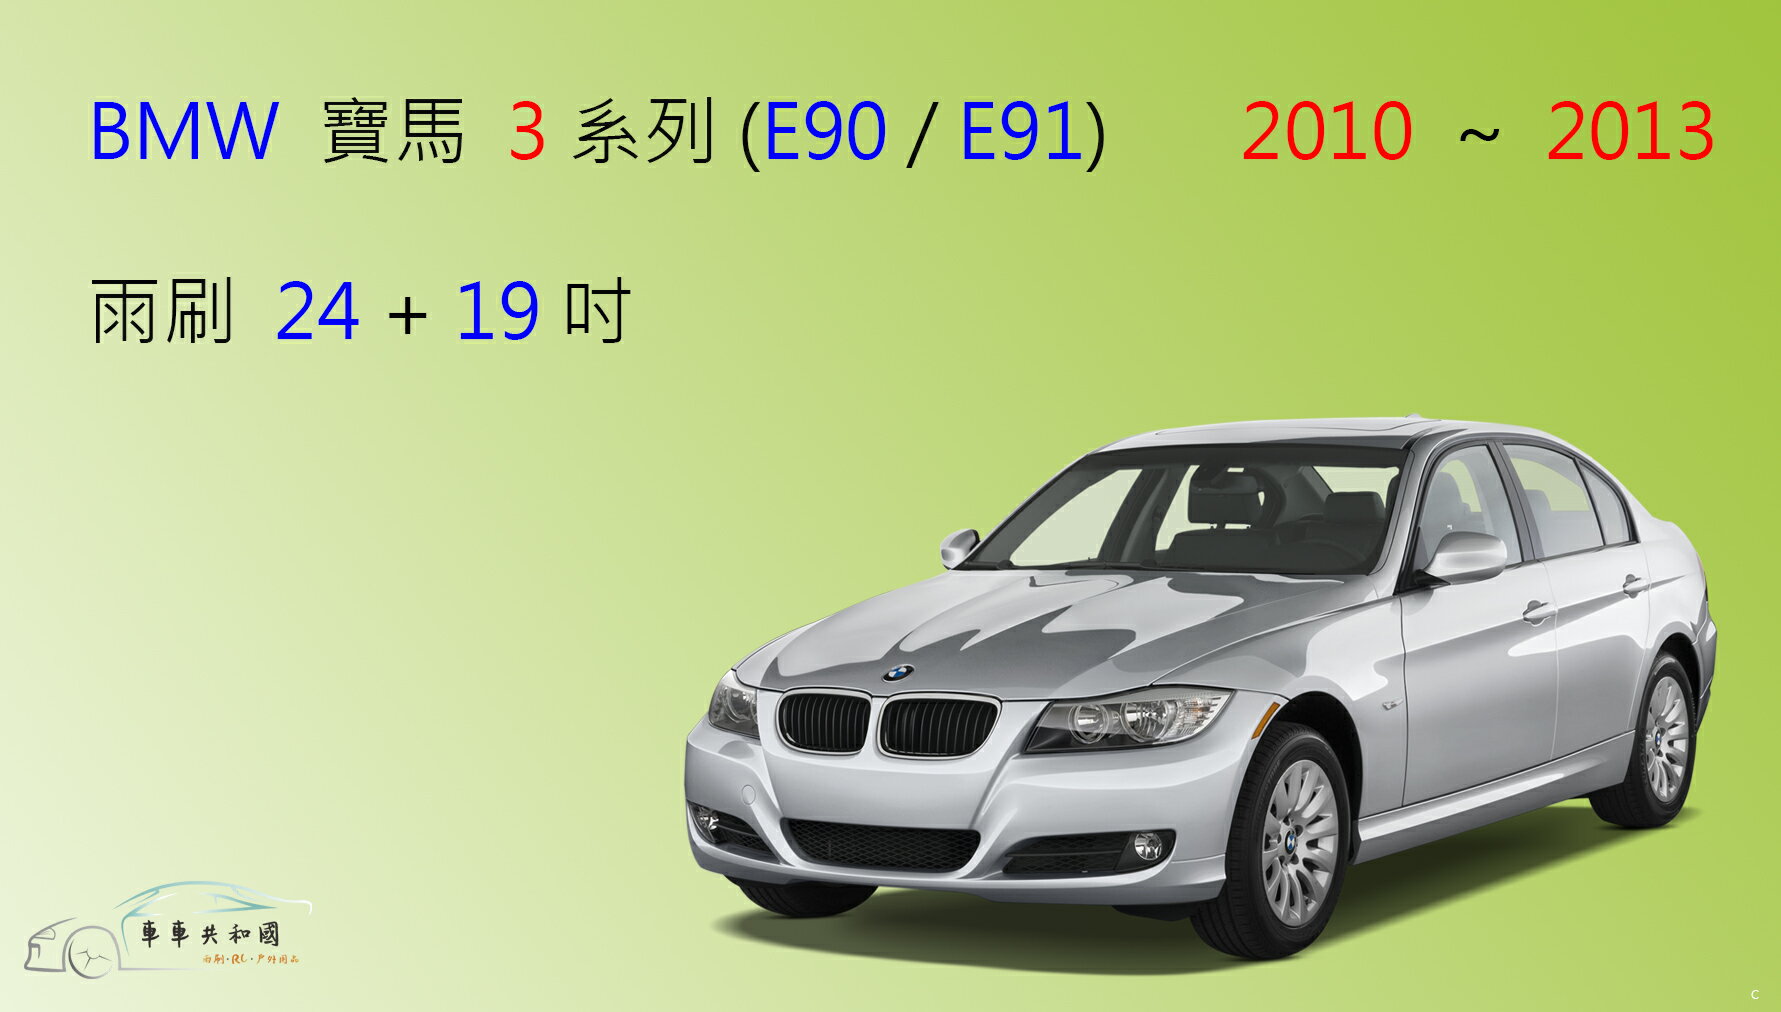 【車車共和國】BMW 寶馬 3 系列( E90/E91) 2010~2013 矽膠雨刷 軟骨雨刷 雨刷錠 燕尾款